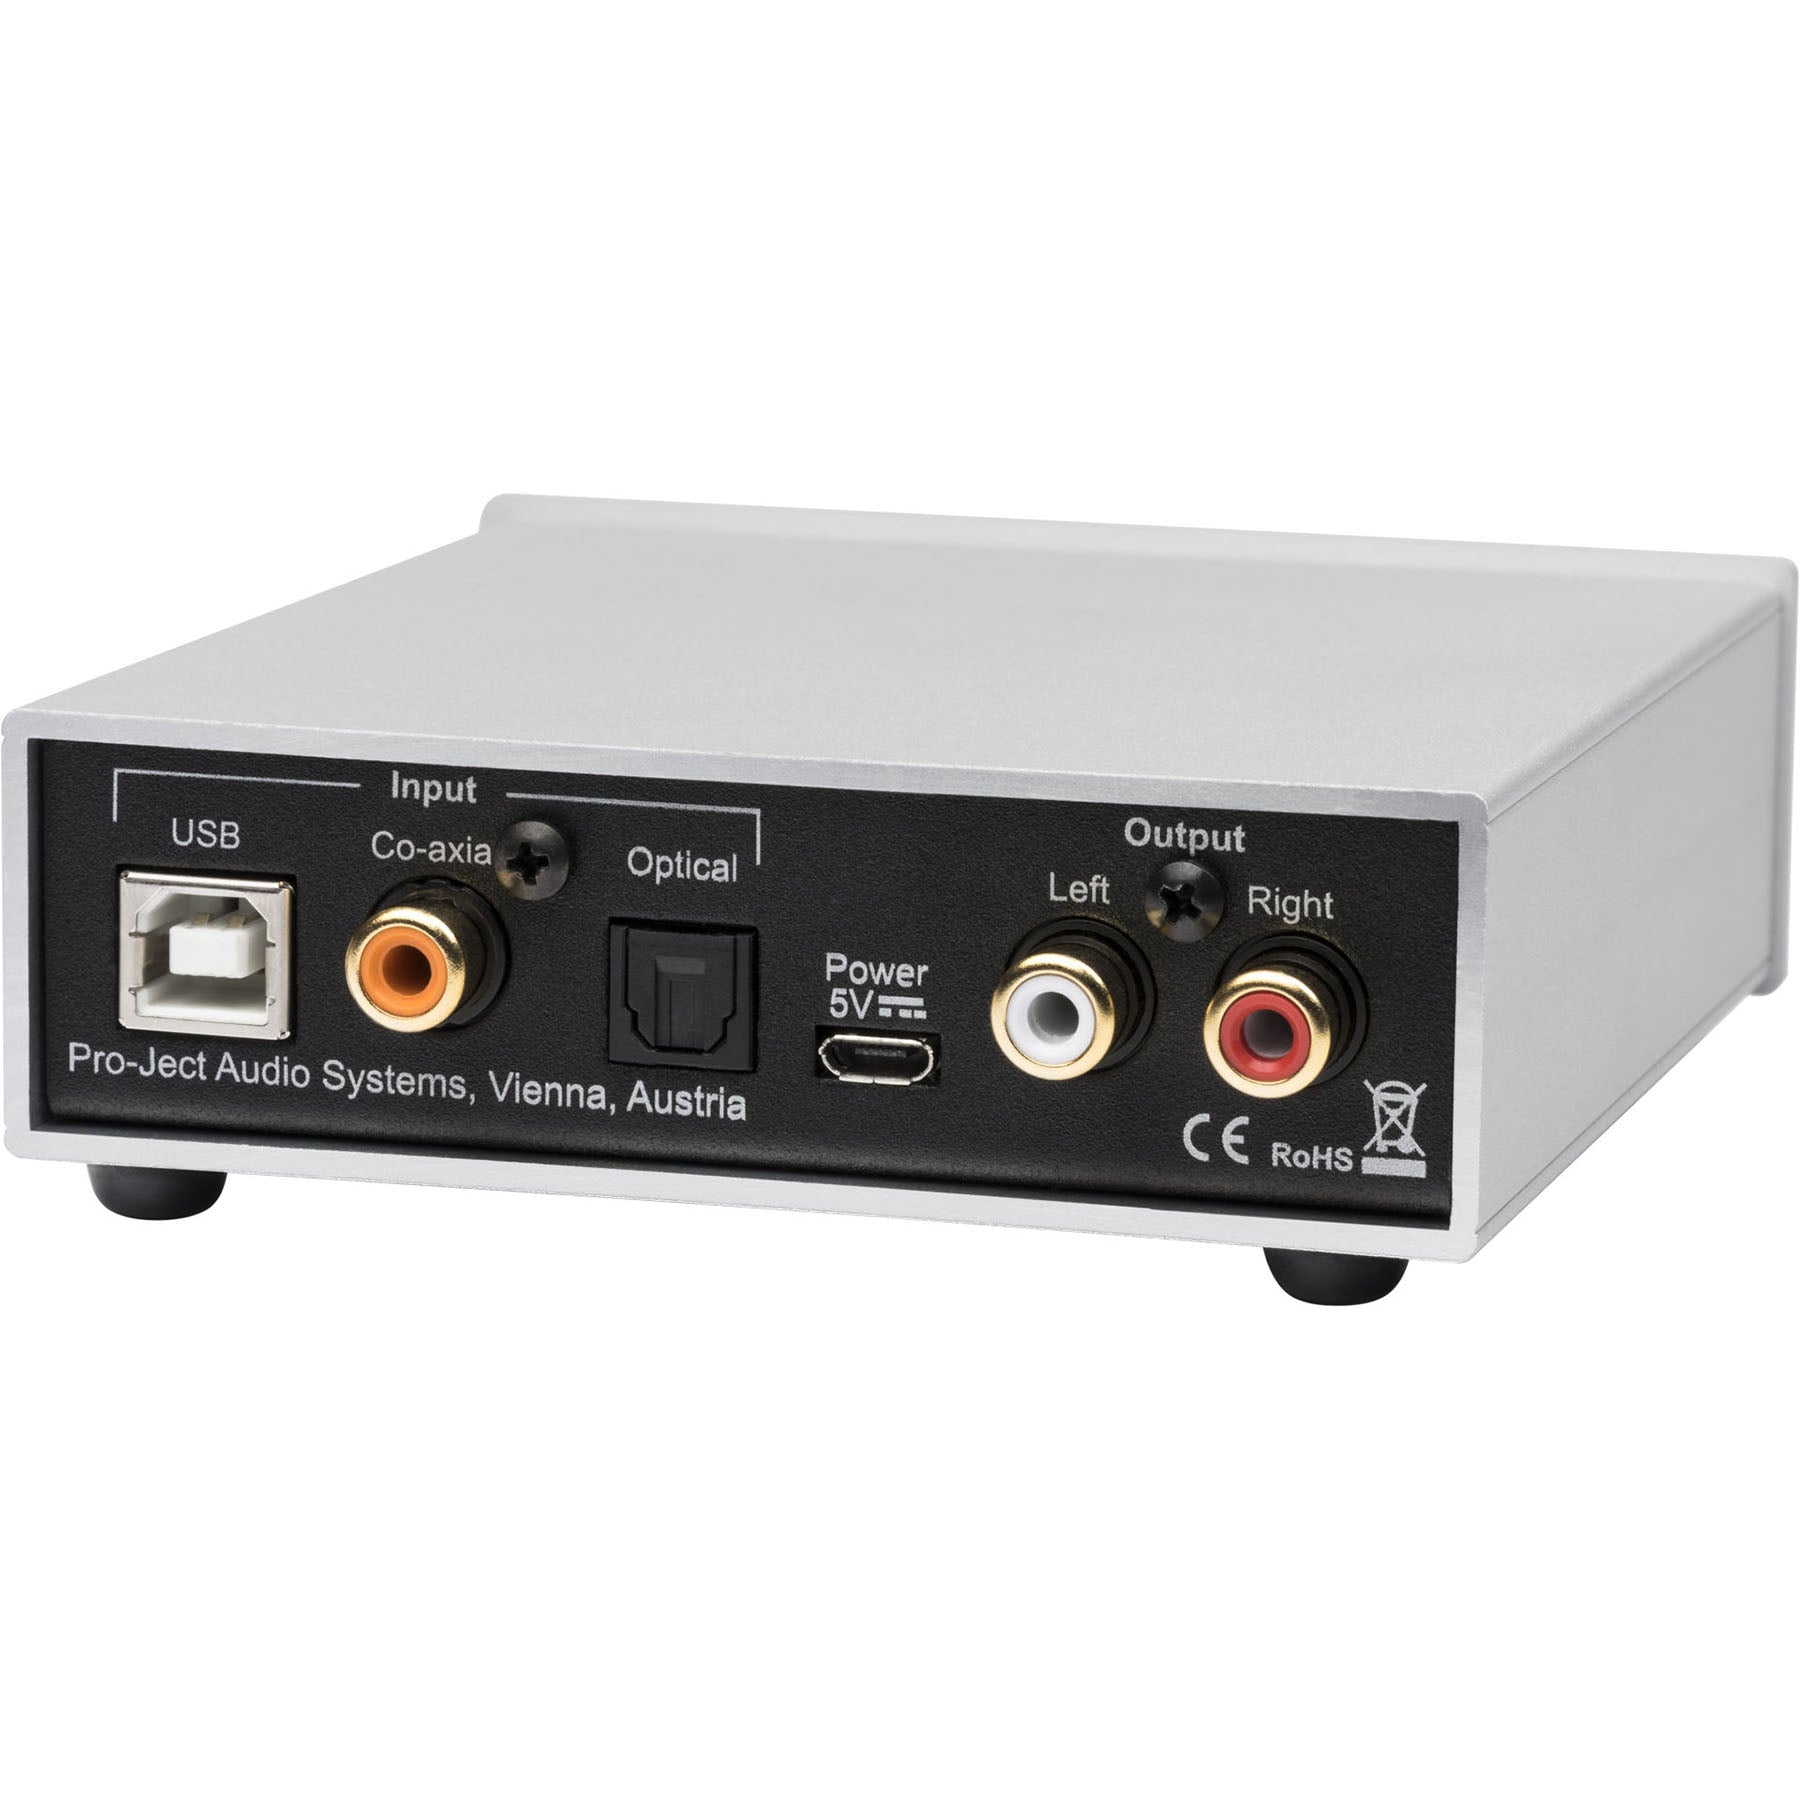 Pro-Ject DAC Box S2 Plus - Digital to Analogue Converter